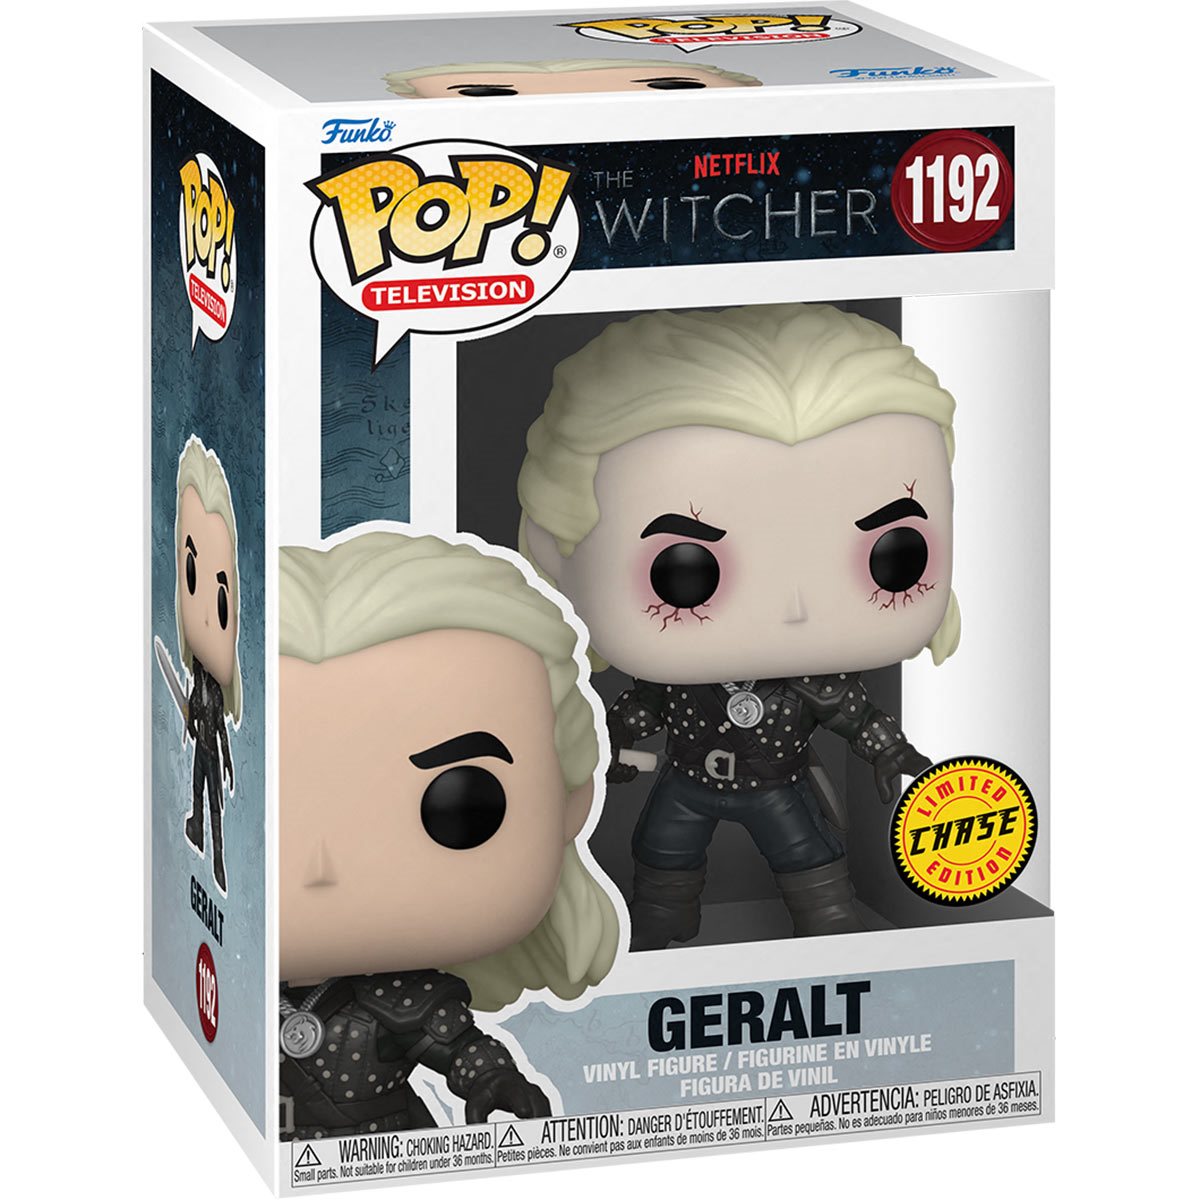 Geralt The Witcher Pop! Vinyl Figure